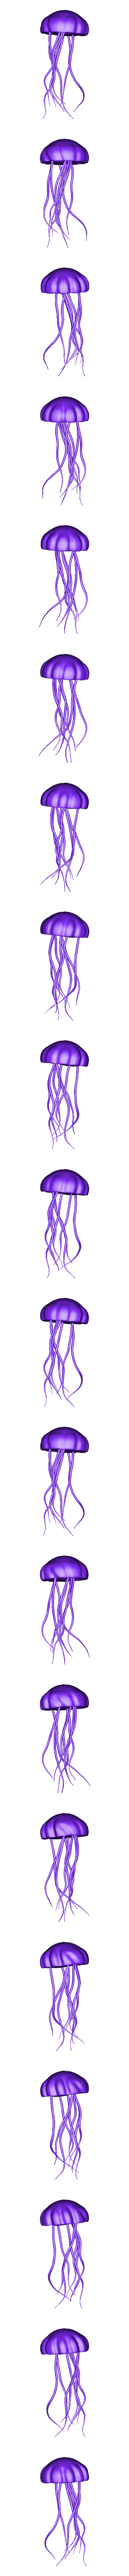 medusa obj.obj Télécharger le fichier OBJ Méduses colorées 2020 • Objet à imprimer en 3D, ronaldocc13